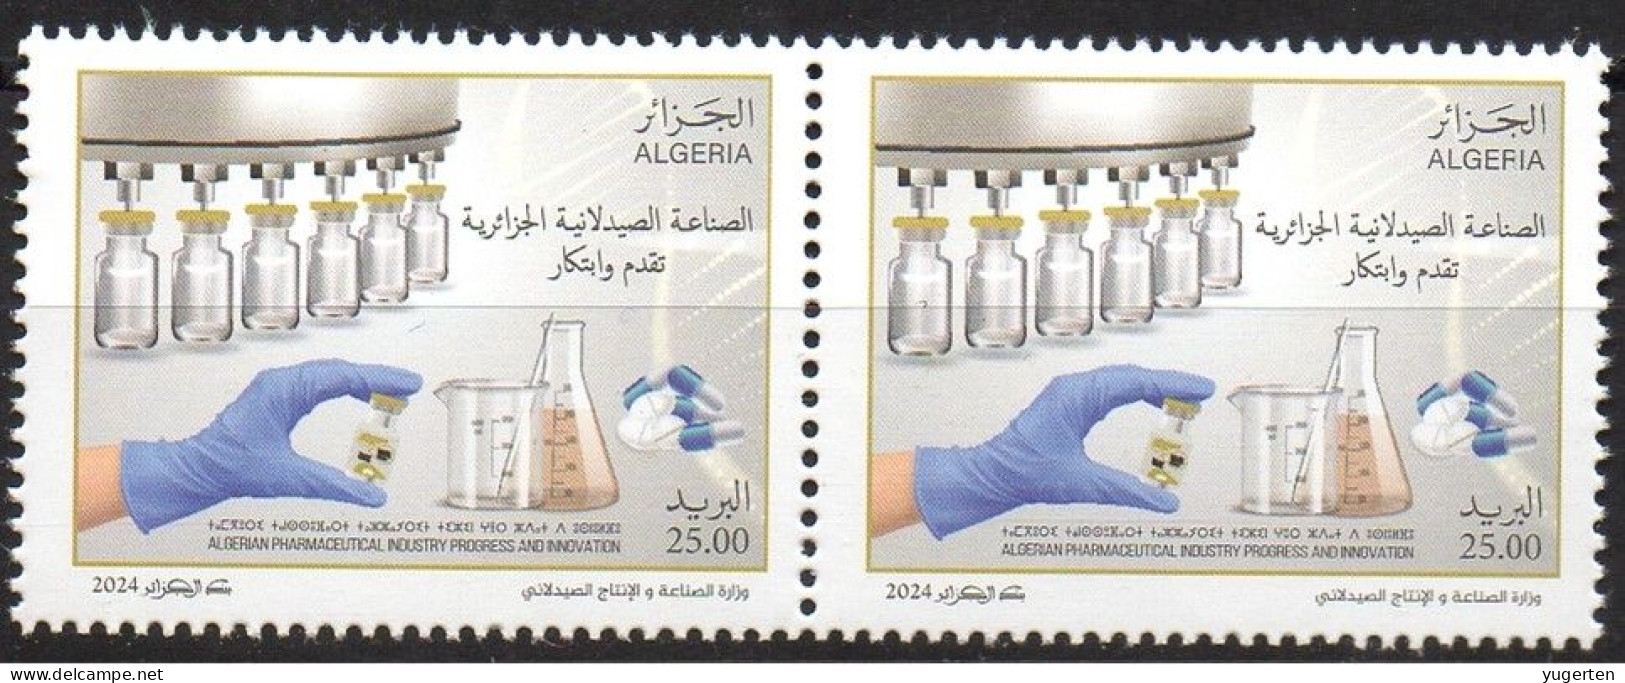 ALGERIE ALGERIA 2024 - 2v - MNH - Industrie Pharmaceutique - Pharmaceutical Industry - Pharmacy - Medicines Pharmacie - Pharmacy